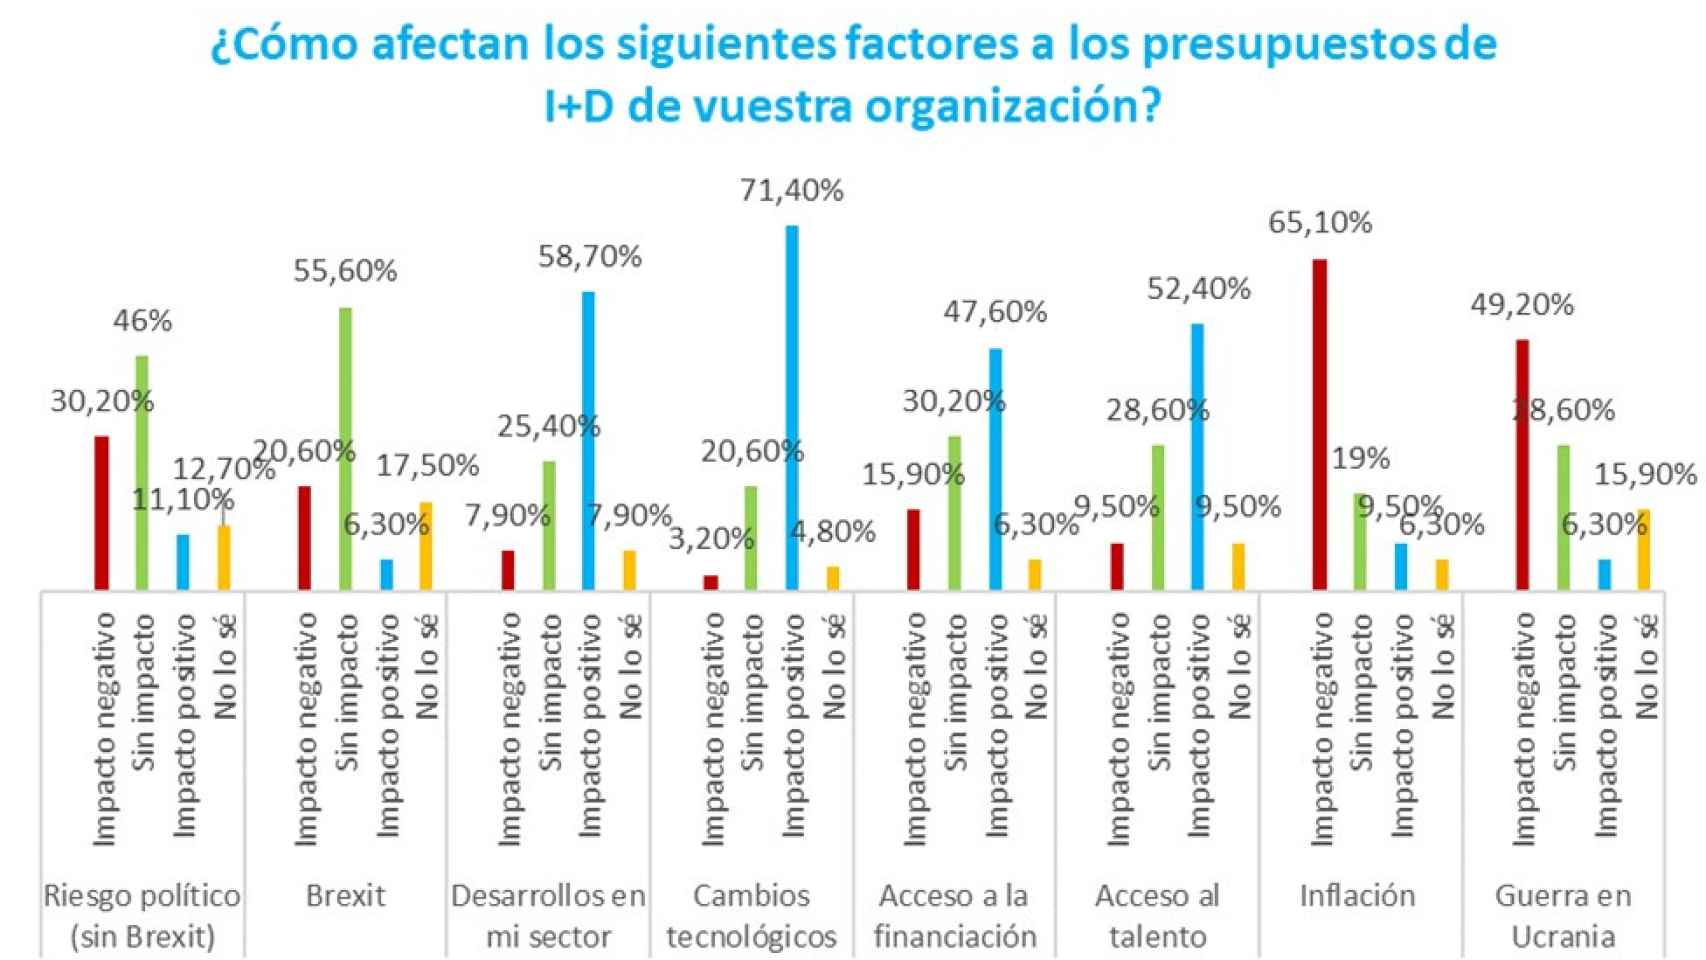 Tabla sobre las principales preocupaciones macroeconómicas en las empresas españolas.